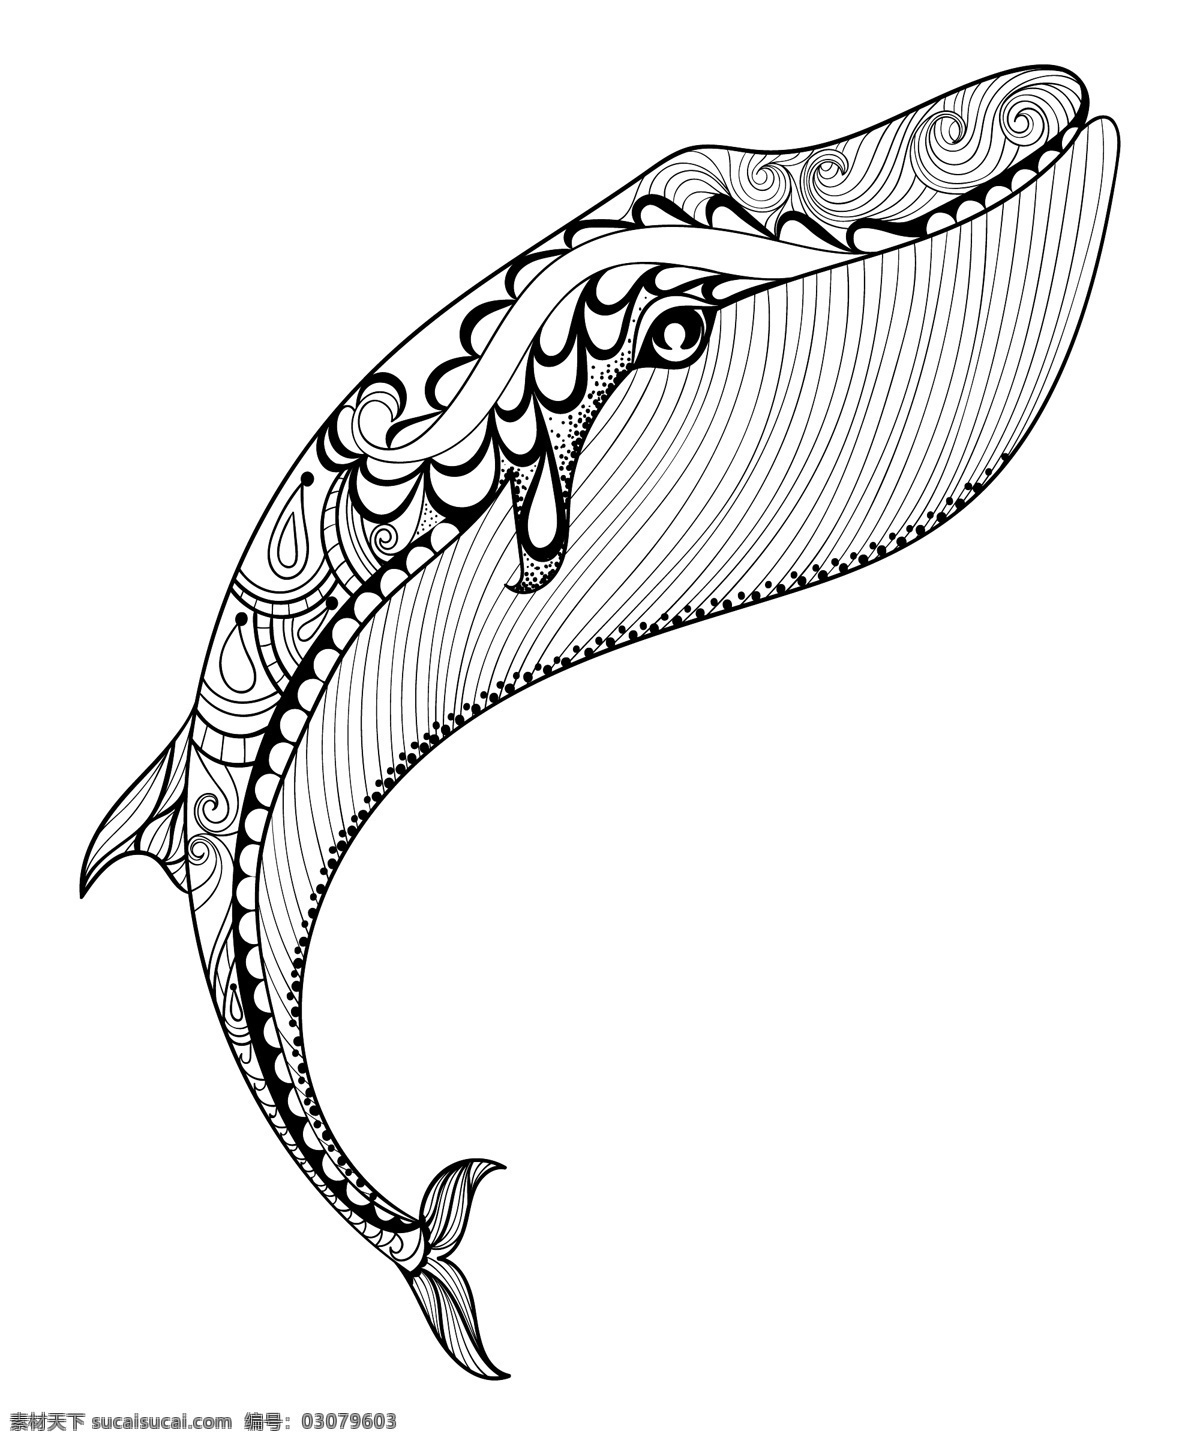 黑白 艺术 卡通 海豚 插画 海洋 动物 生物